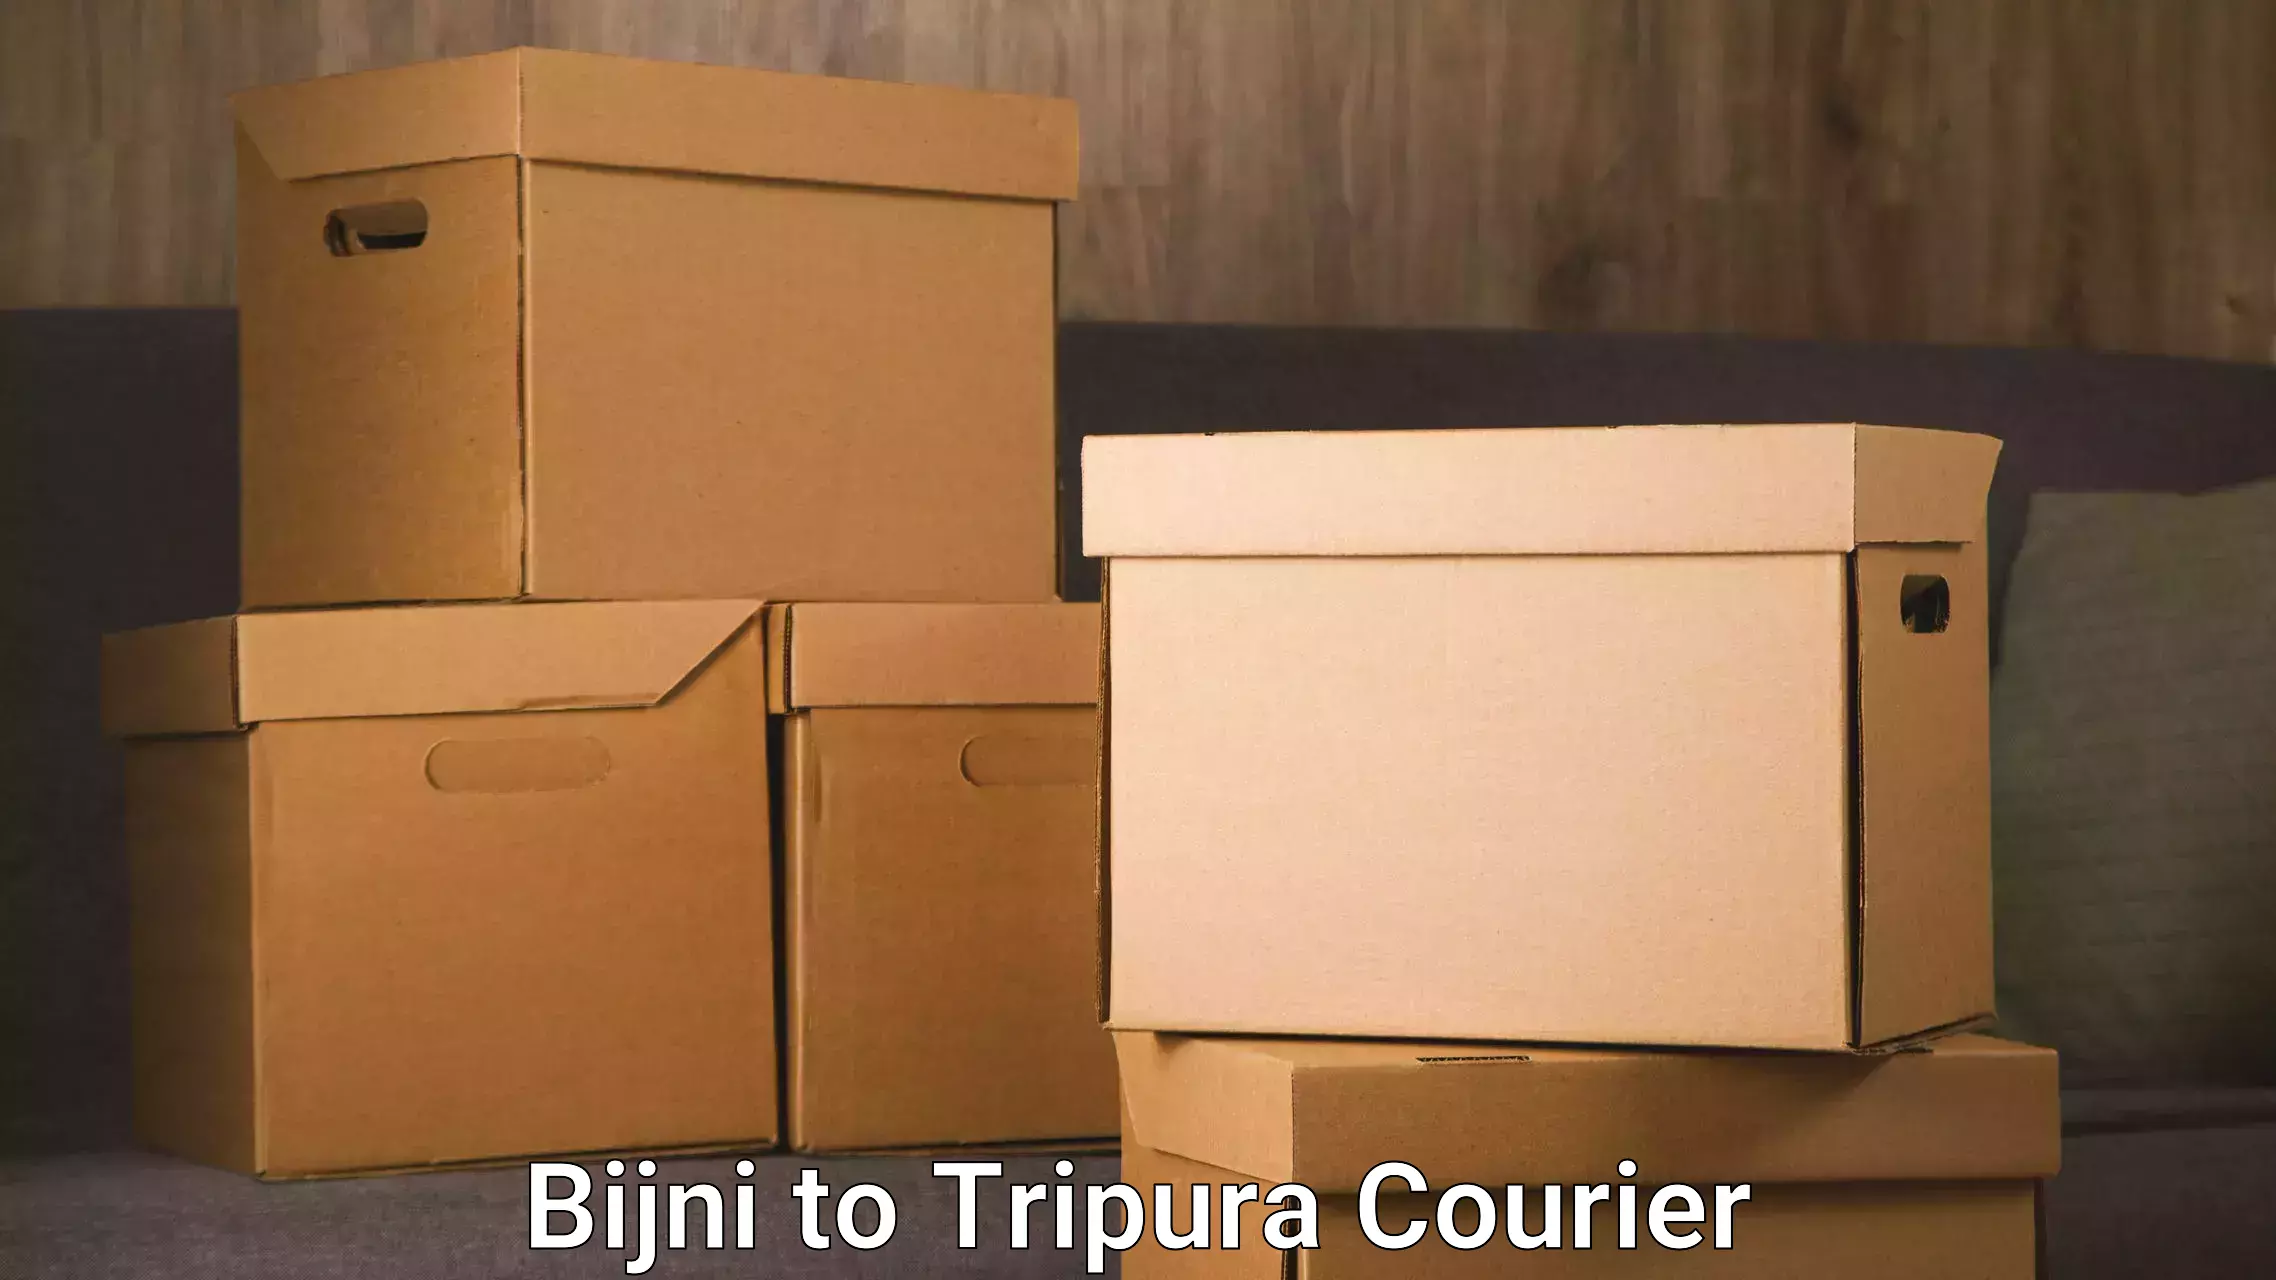 Logistics service provider Bijni to Tripura